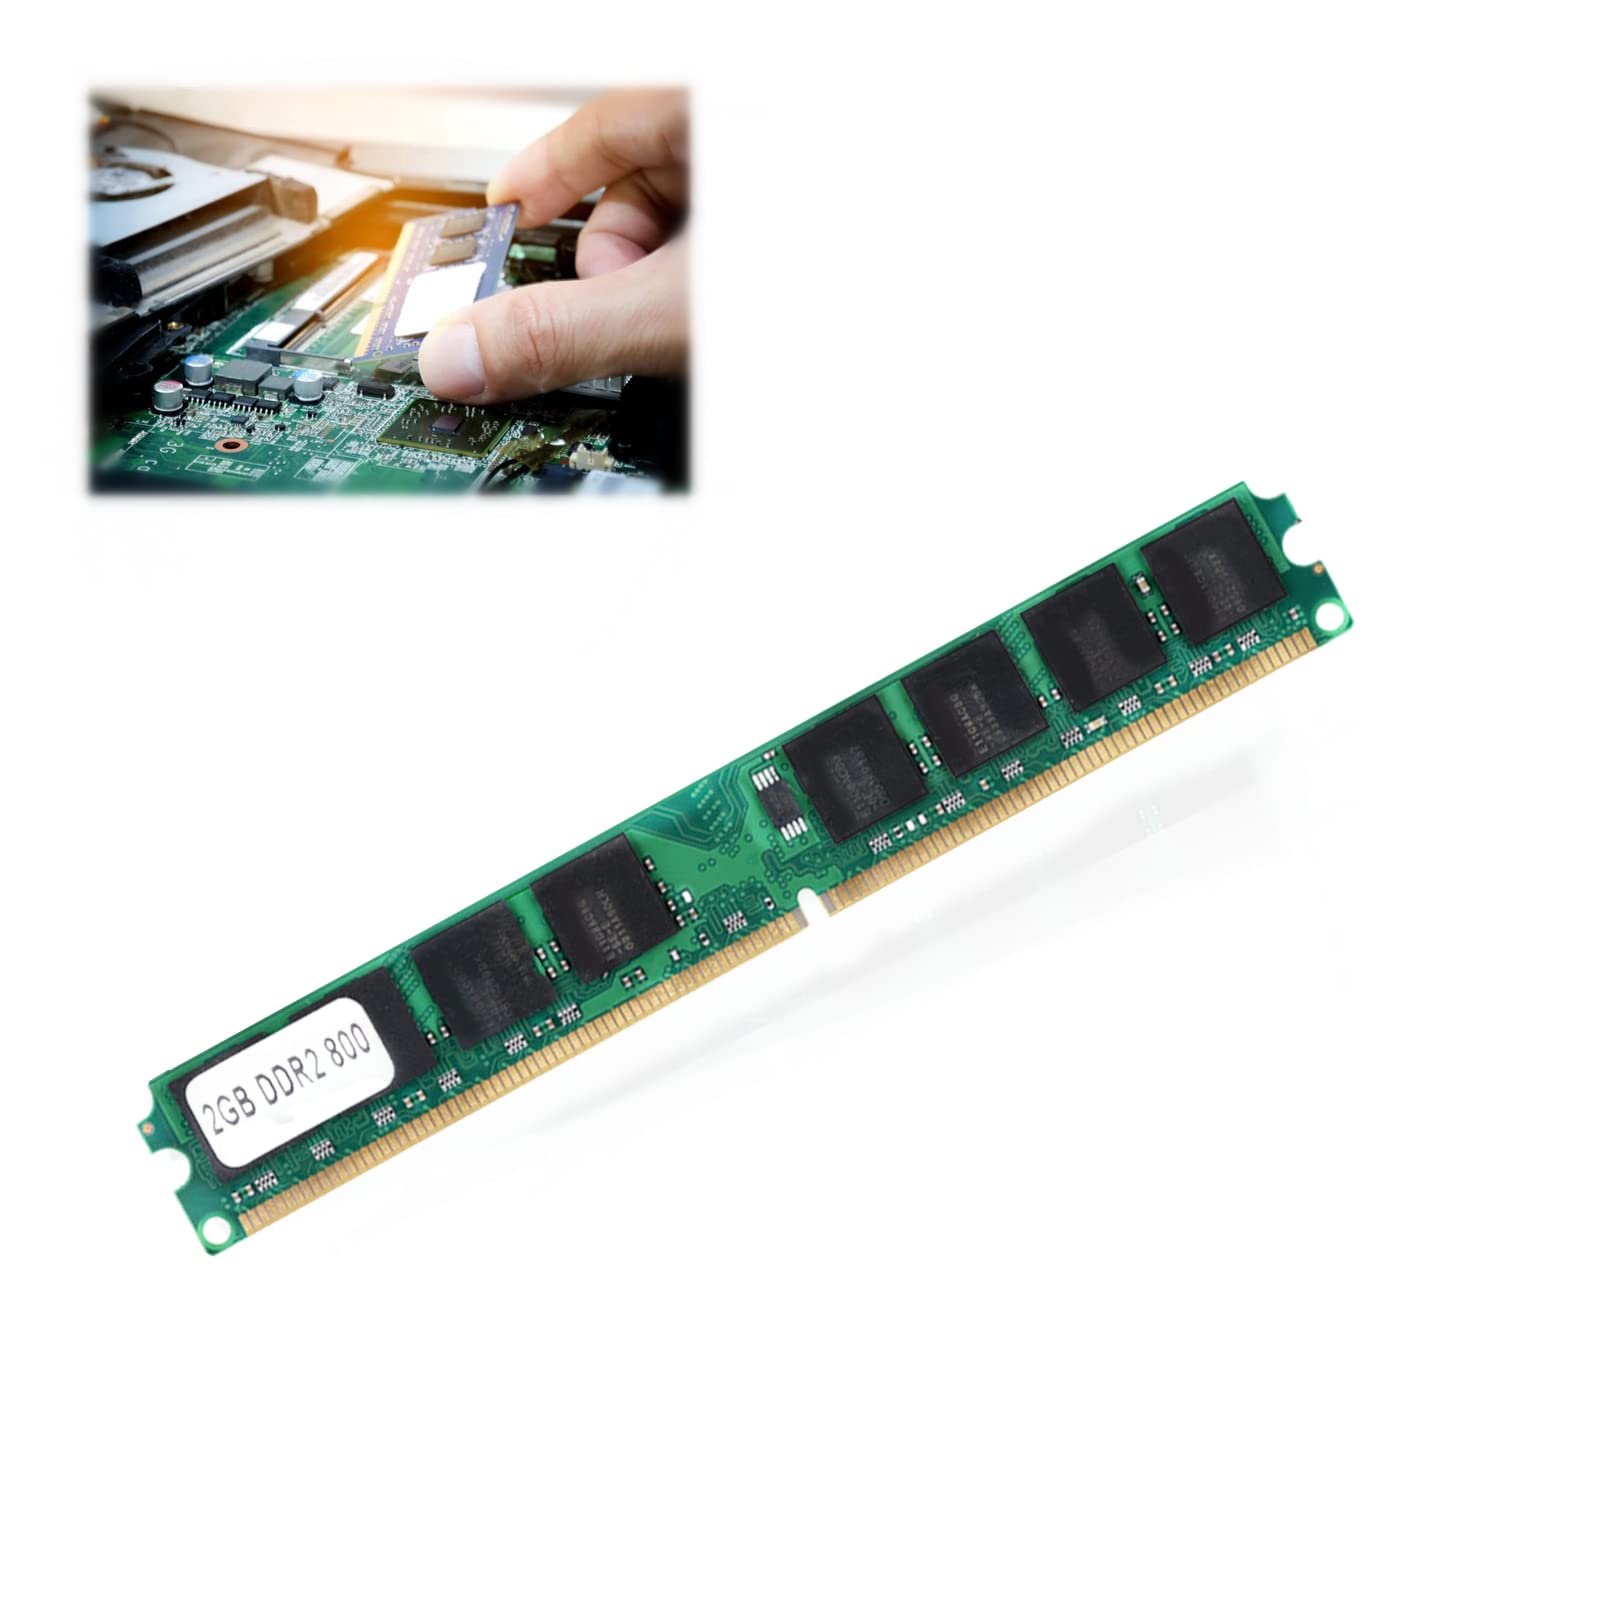 DDR2 メモリー 2G 800MHz PC2-6400 PC メモリー Ram 240ピン モジュールボード IntelAMD対応